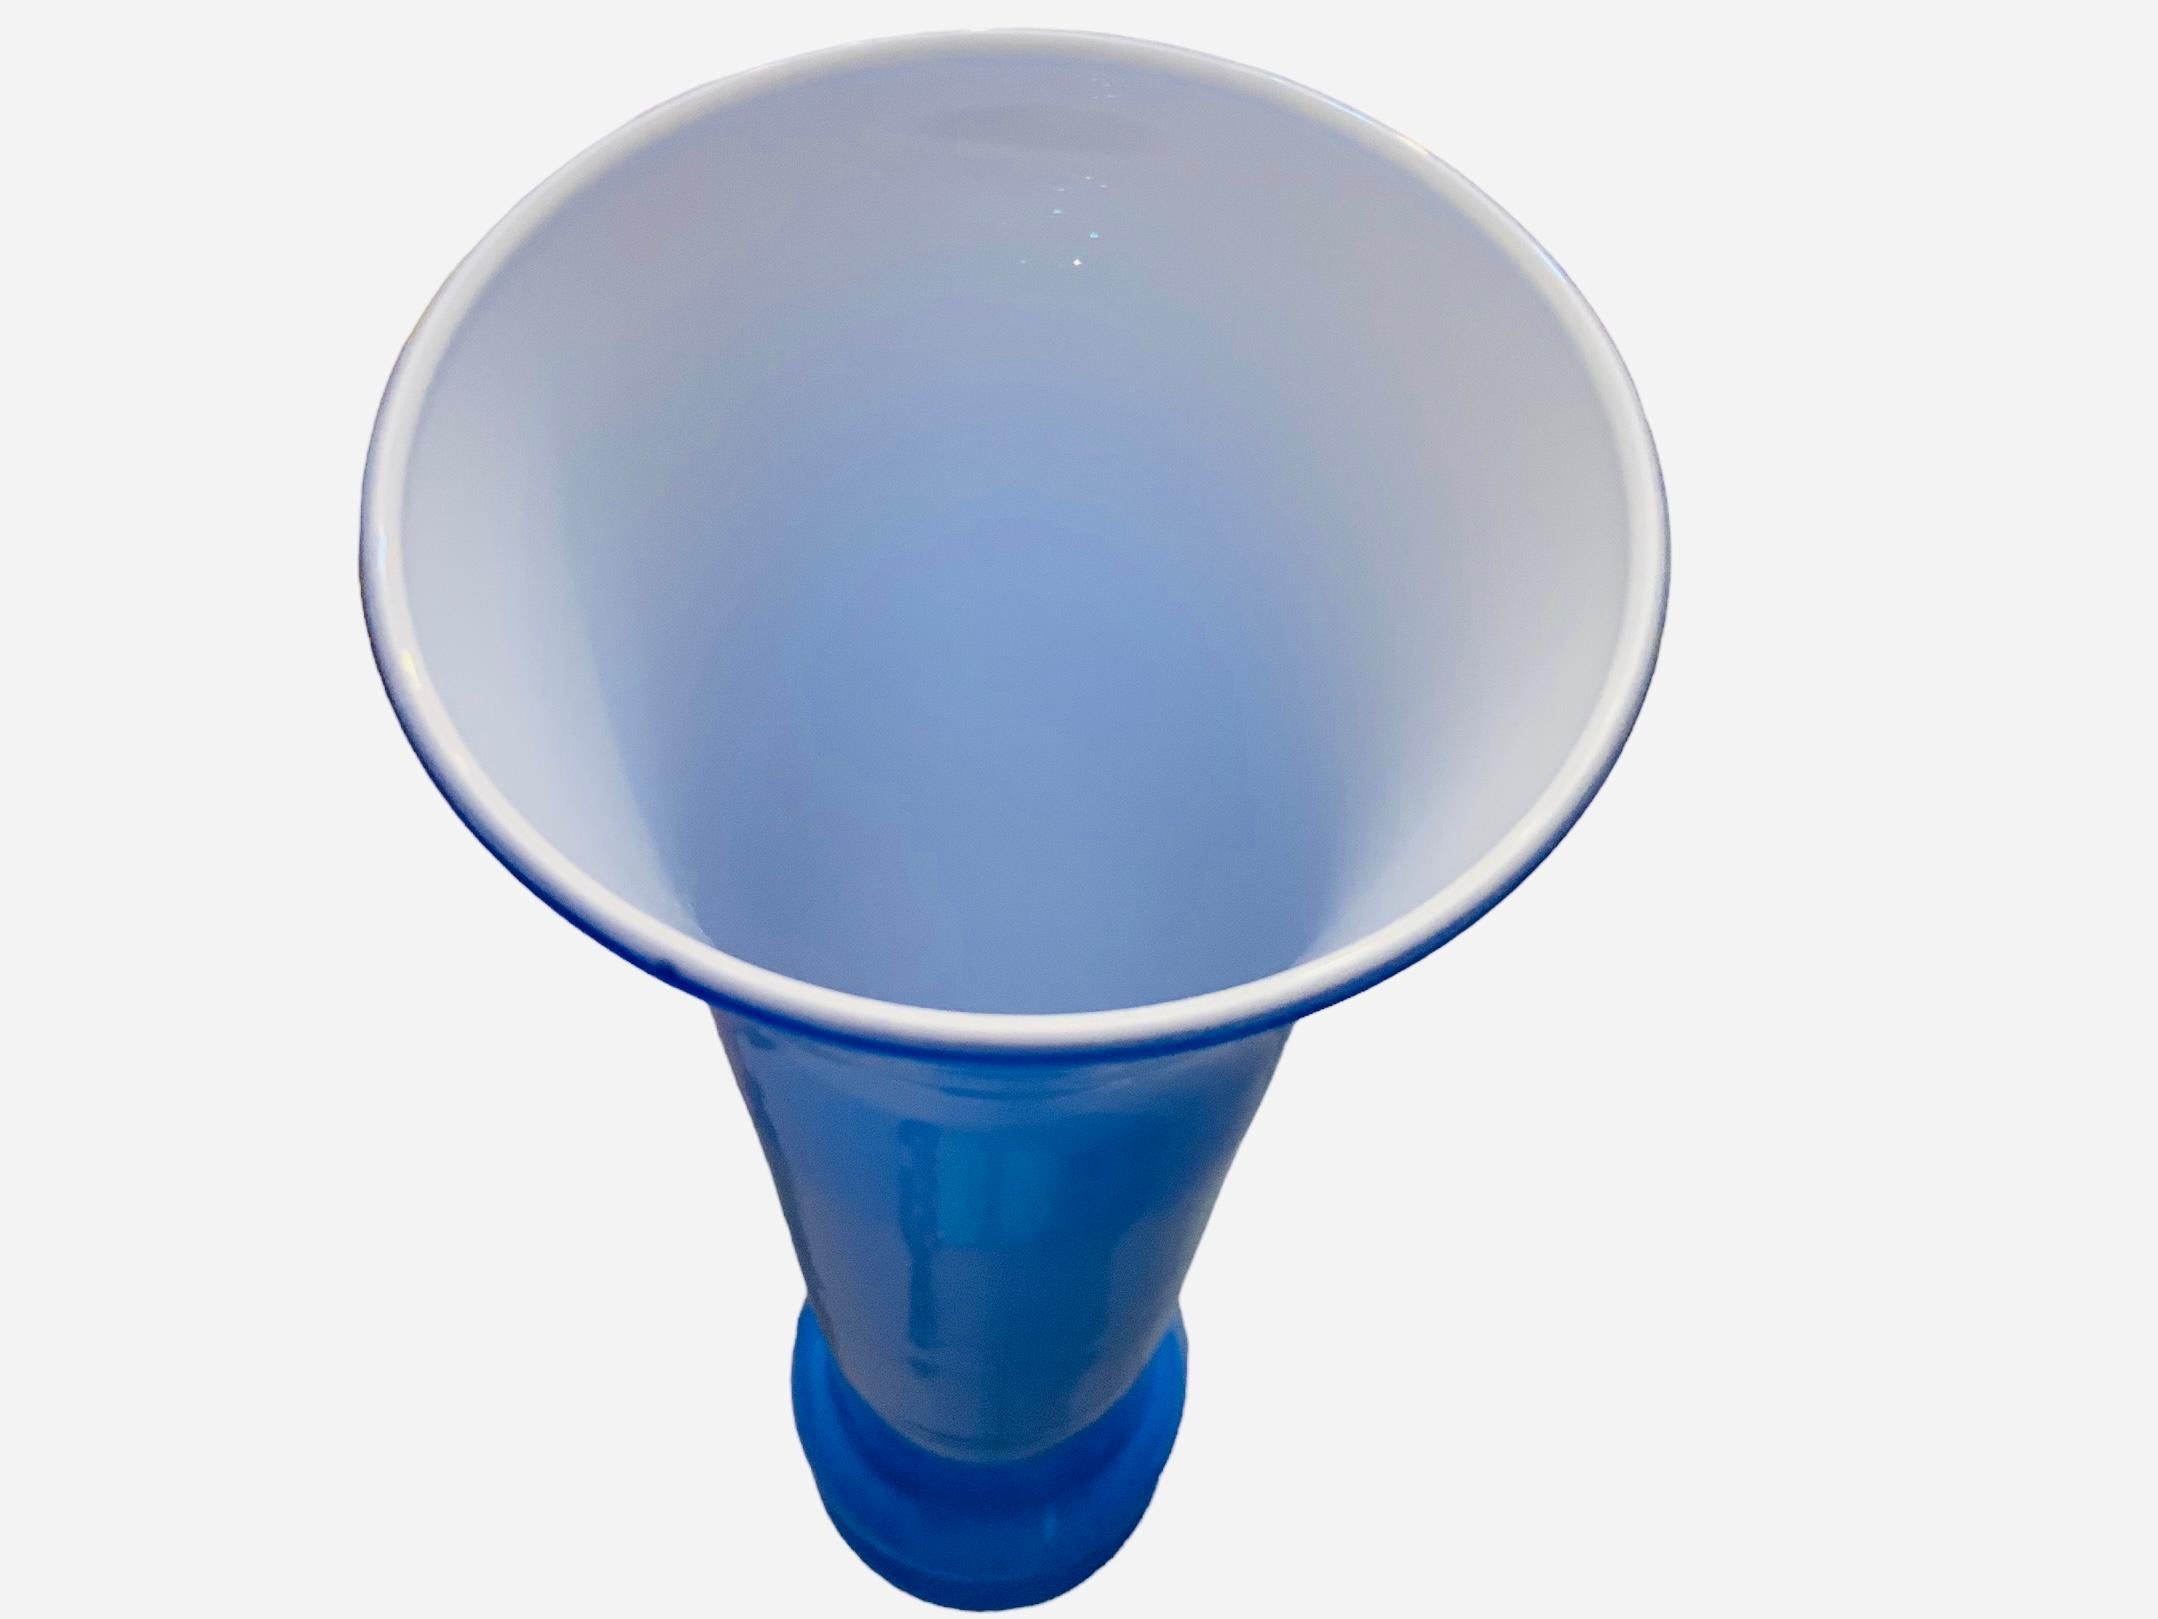 Il s'agit d'un vase en verre Art Glass bleu royal et blanc. Il représente une haute base cannelée en verre bleu royal, ornée de deux anneaux faits du même verre dans la partie inférieure de la base. L'intérieur du vase est blanc. Le vase est fixé à